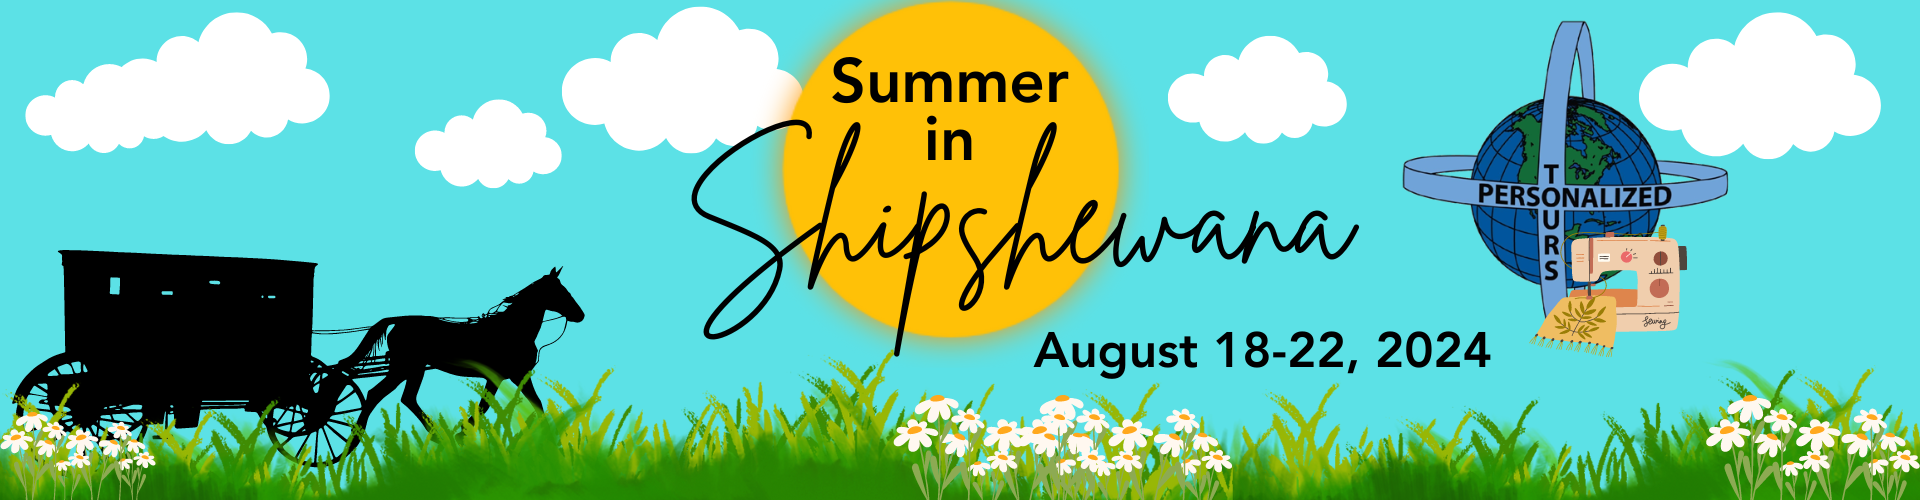 Summer in Shipshewana